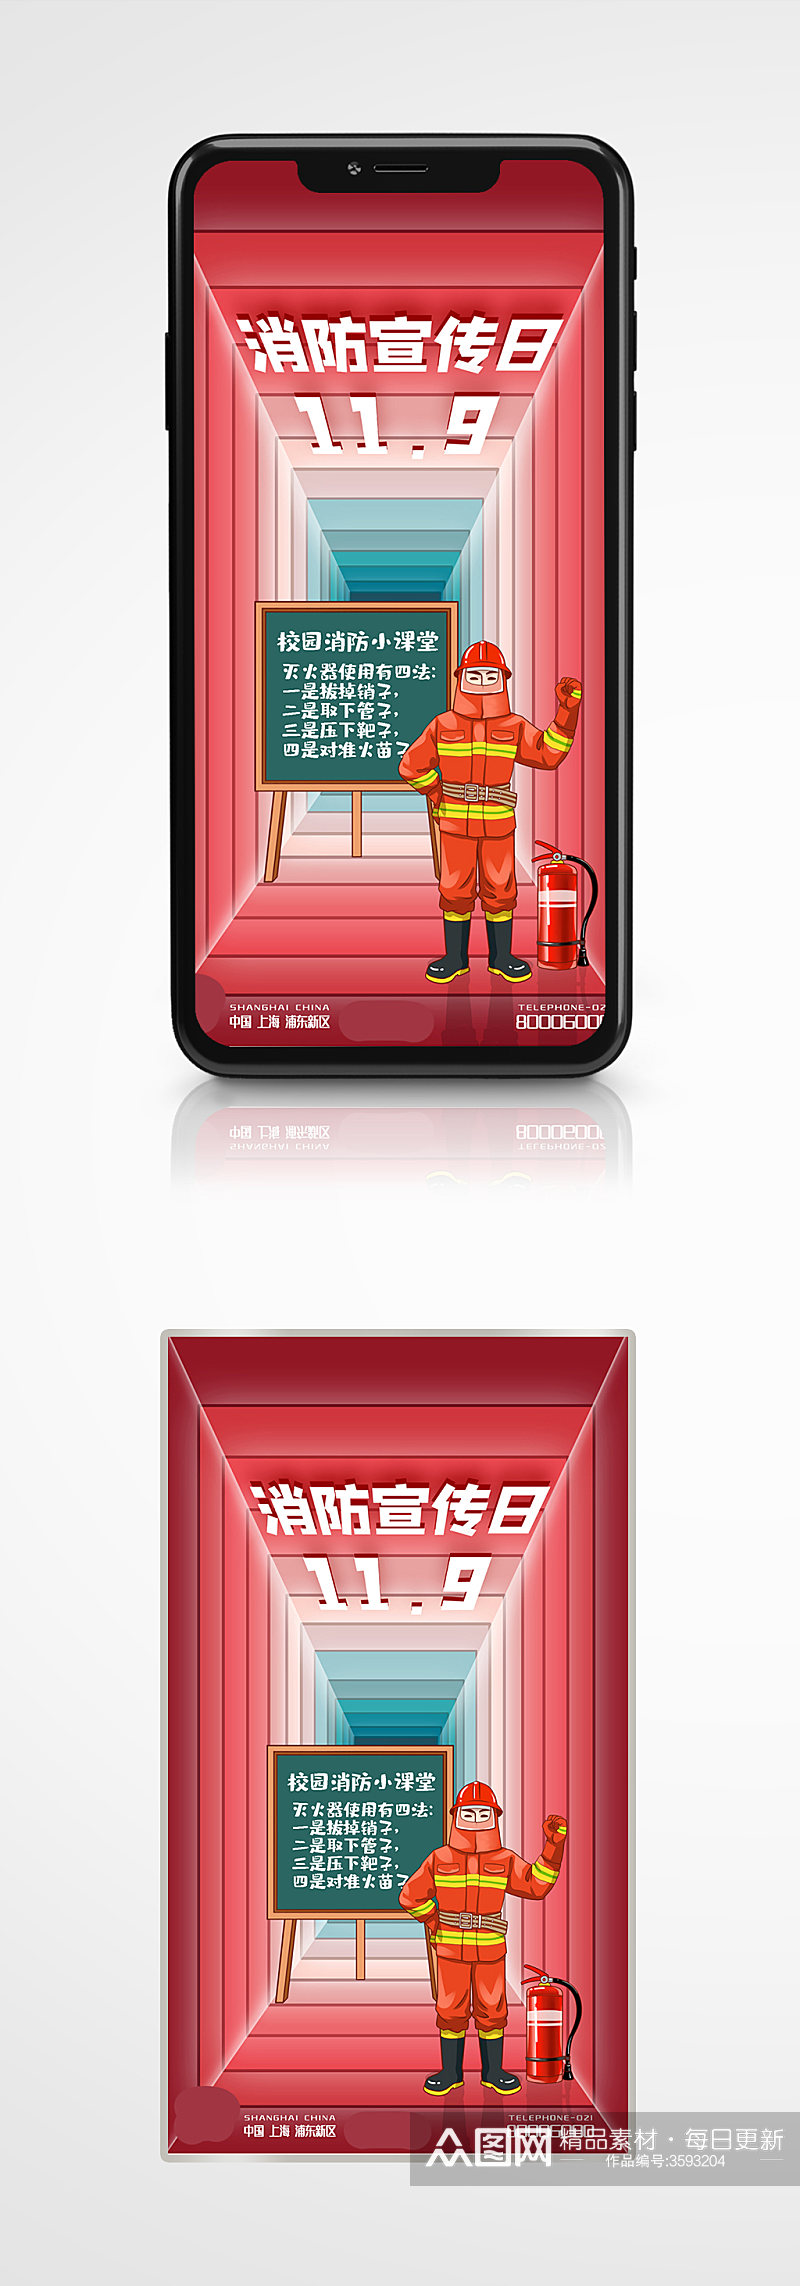 119中国消防日消防安全科普培训讲座海报素材